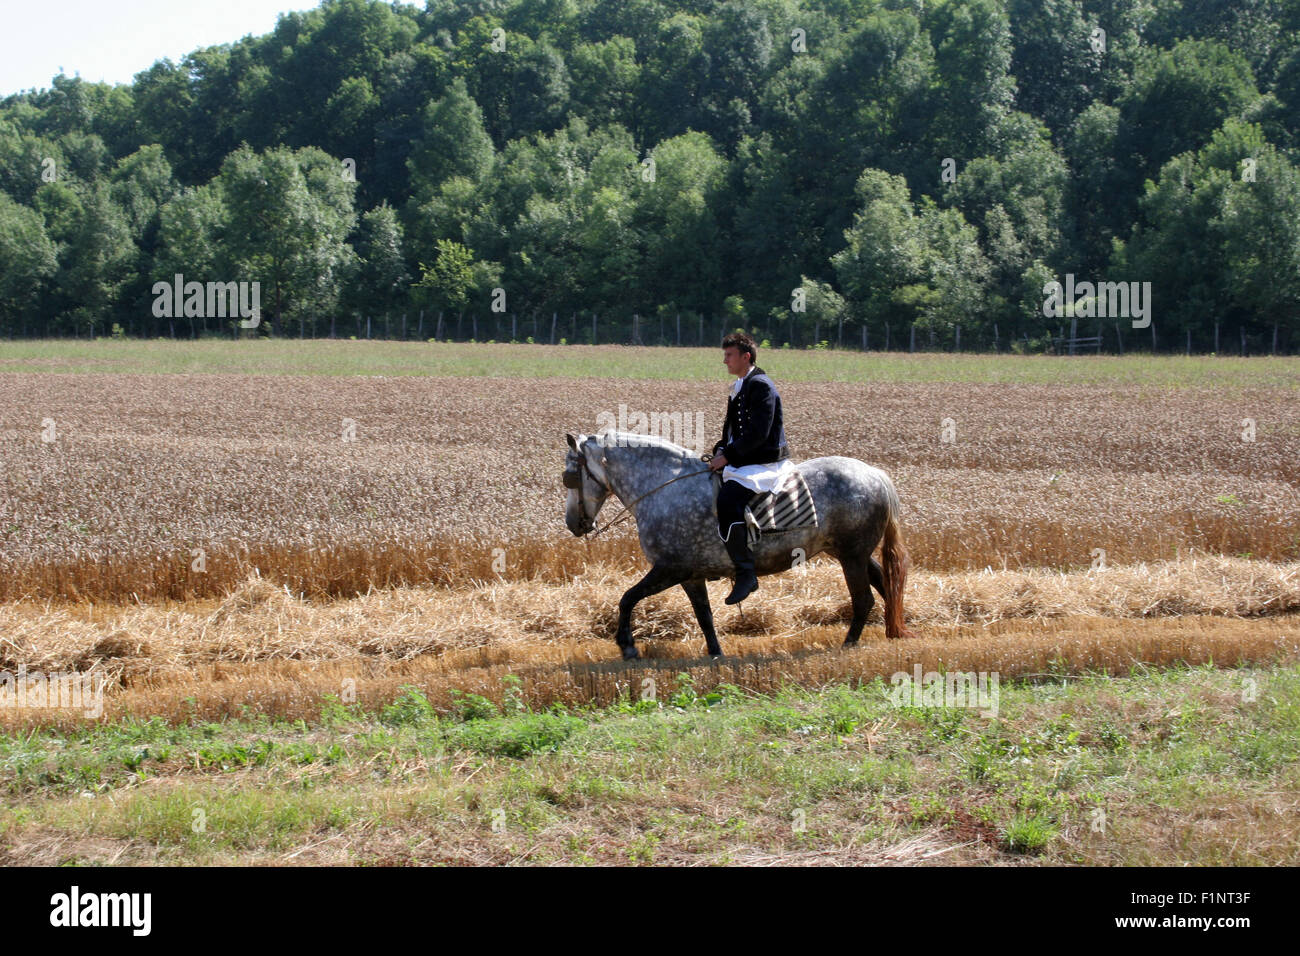 El hombre a caballo, vestida con el traje nacional, cabalgando por campos de trigo durante la cosecha de trigo en Davor, Eslavonia, Croacia Foto de stock